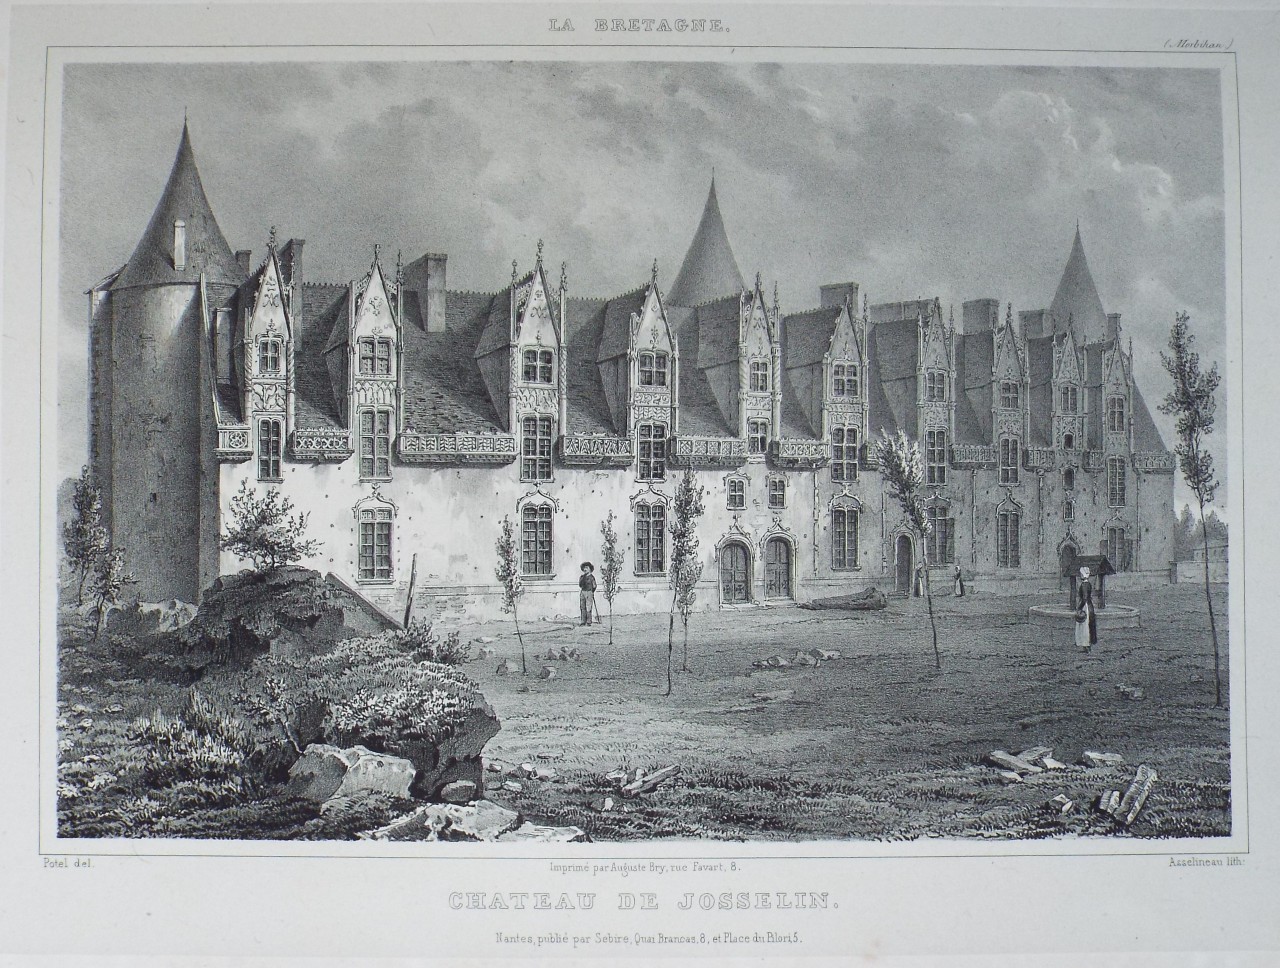 Lithograph - Chateau de Josselin.